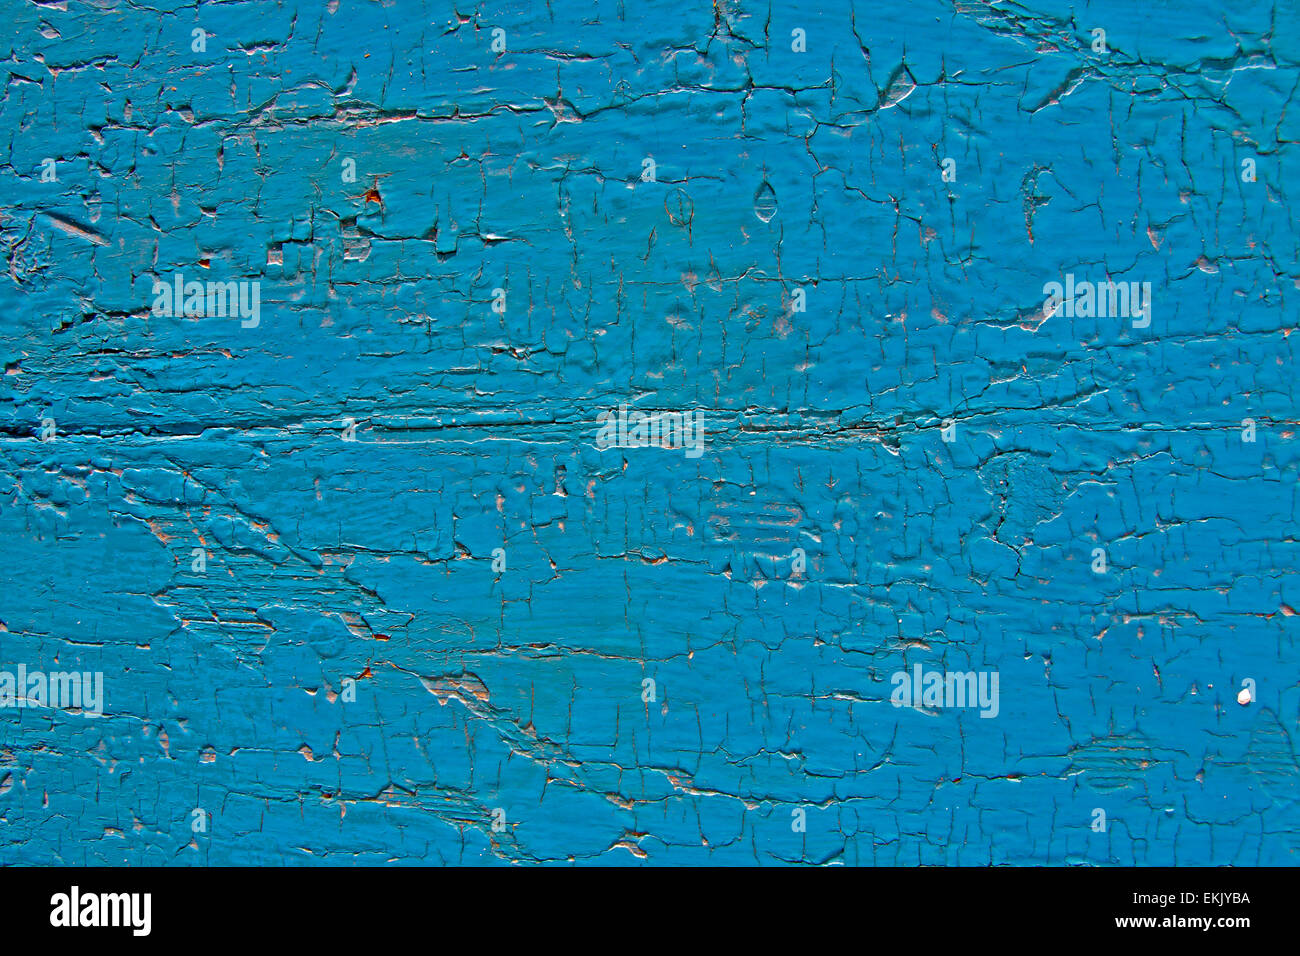 Turquoise blue cracked paint Stock Photo